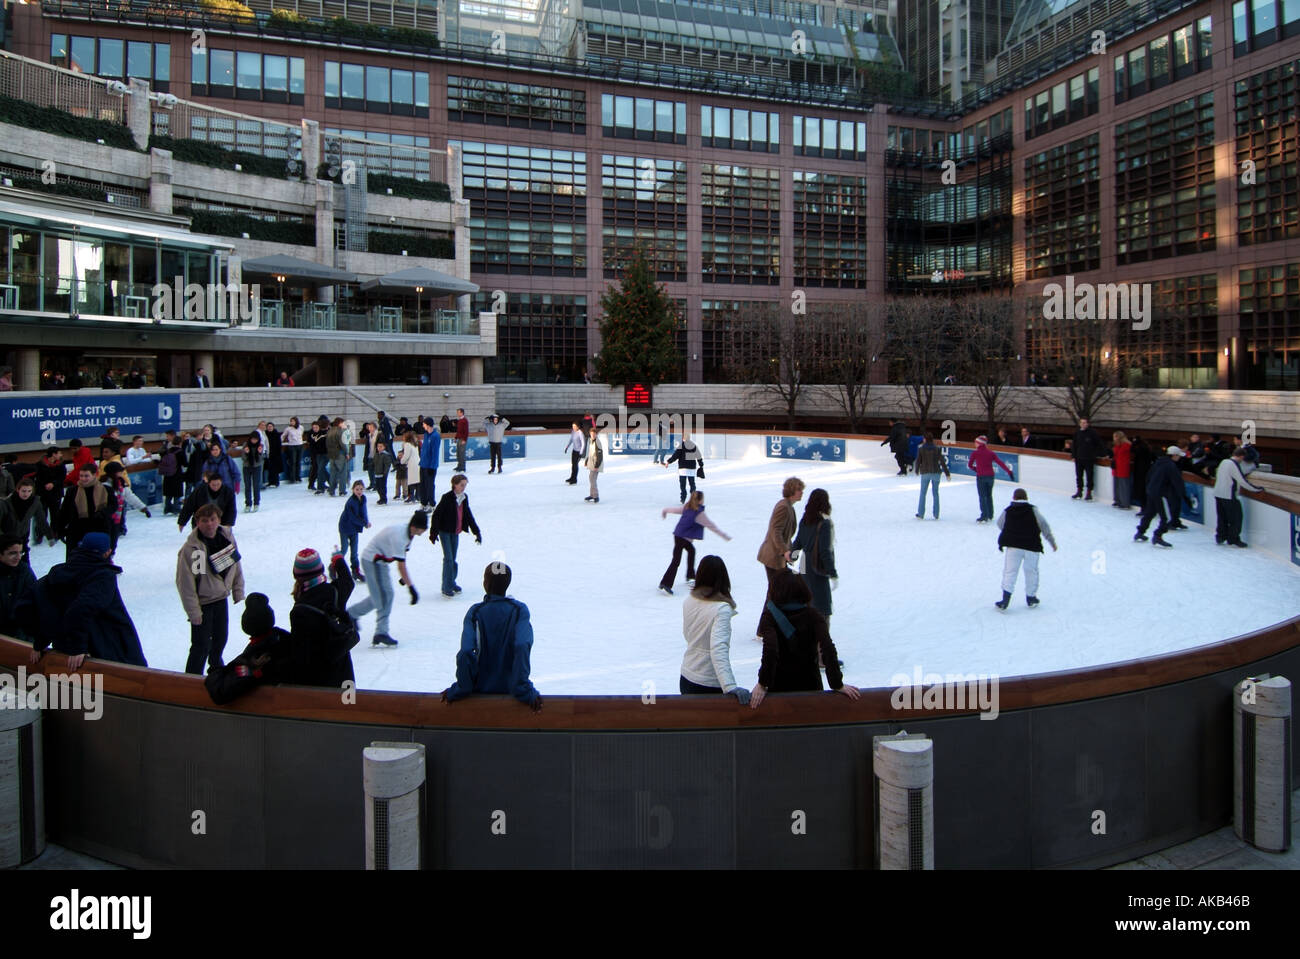 City of London sendet Menschen auf einer öffentlichen, im Winter geöffneten, kreisförmigen Eislaufbahn im Freien mit lustigen Schlittschuhläufern und Bürogebäuden außerhalb Englands Stockfoto